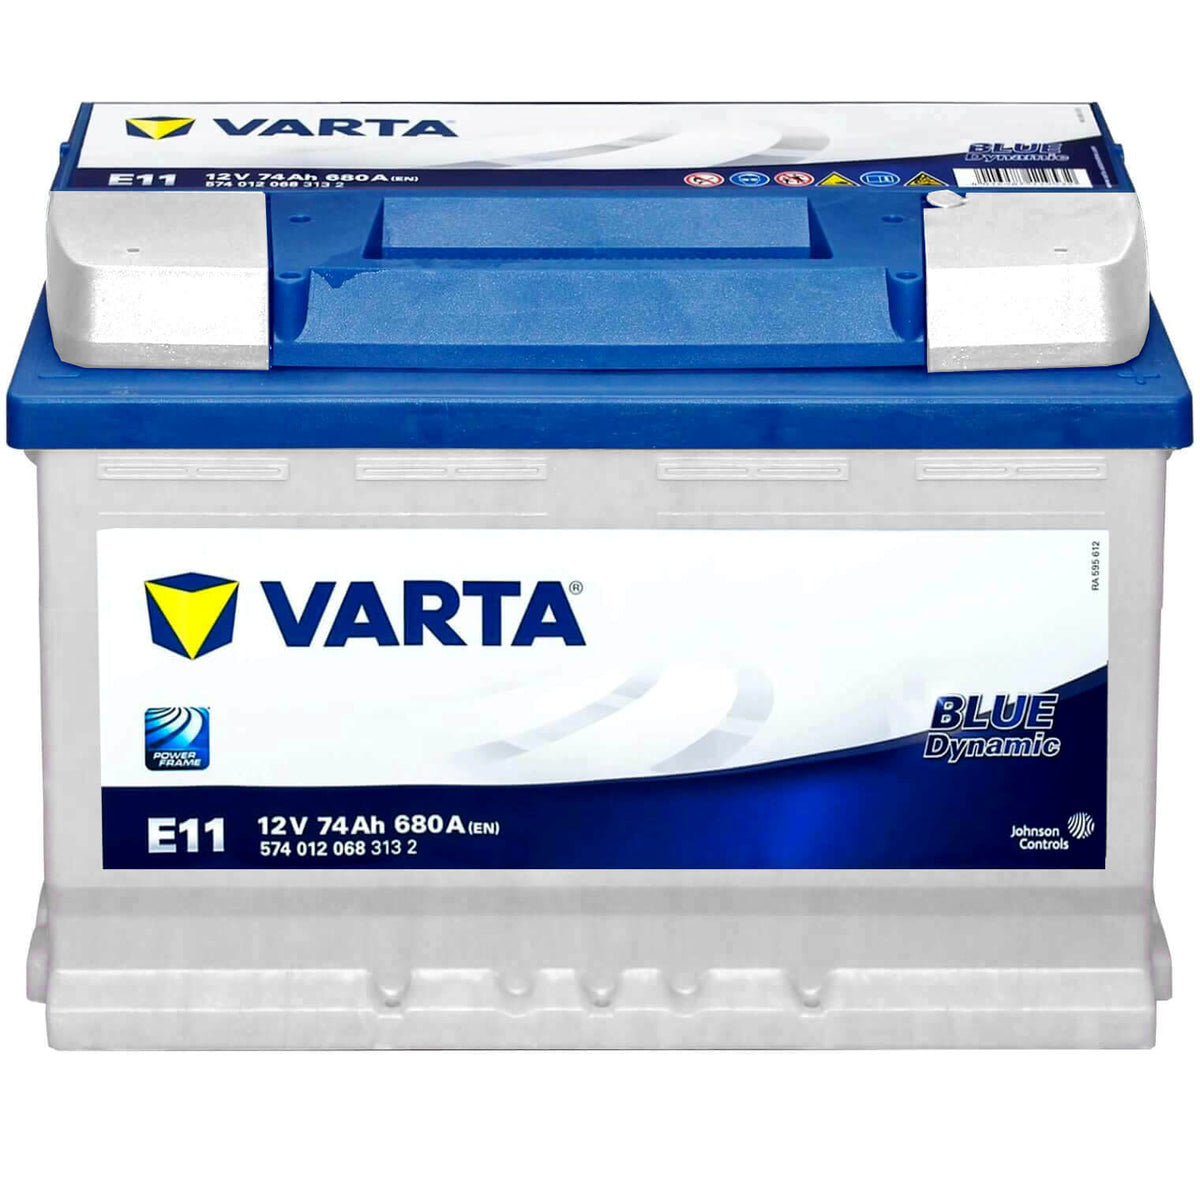 Autobatterie Varta 12V 74Ah geprüft, guter Zustand. in Essen